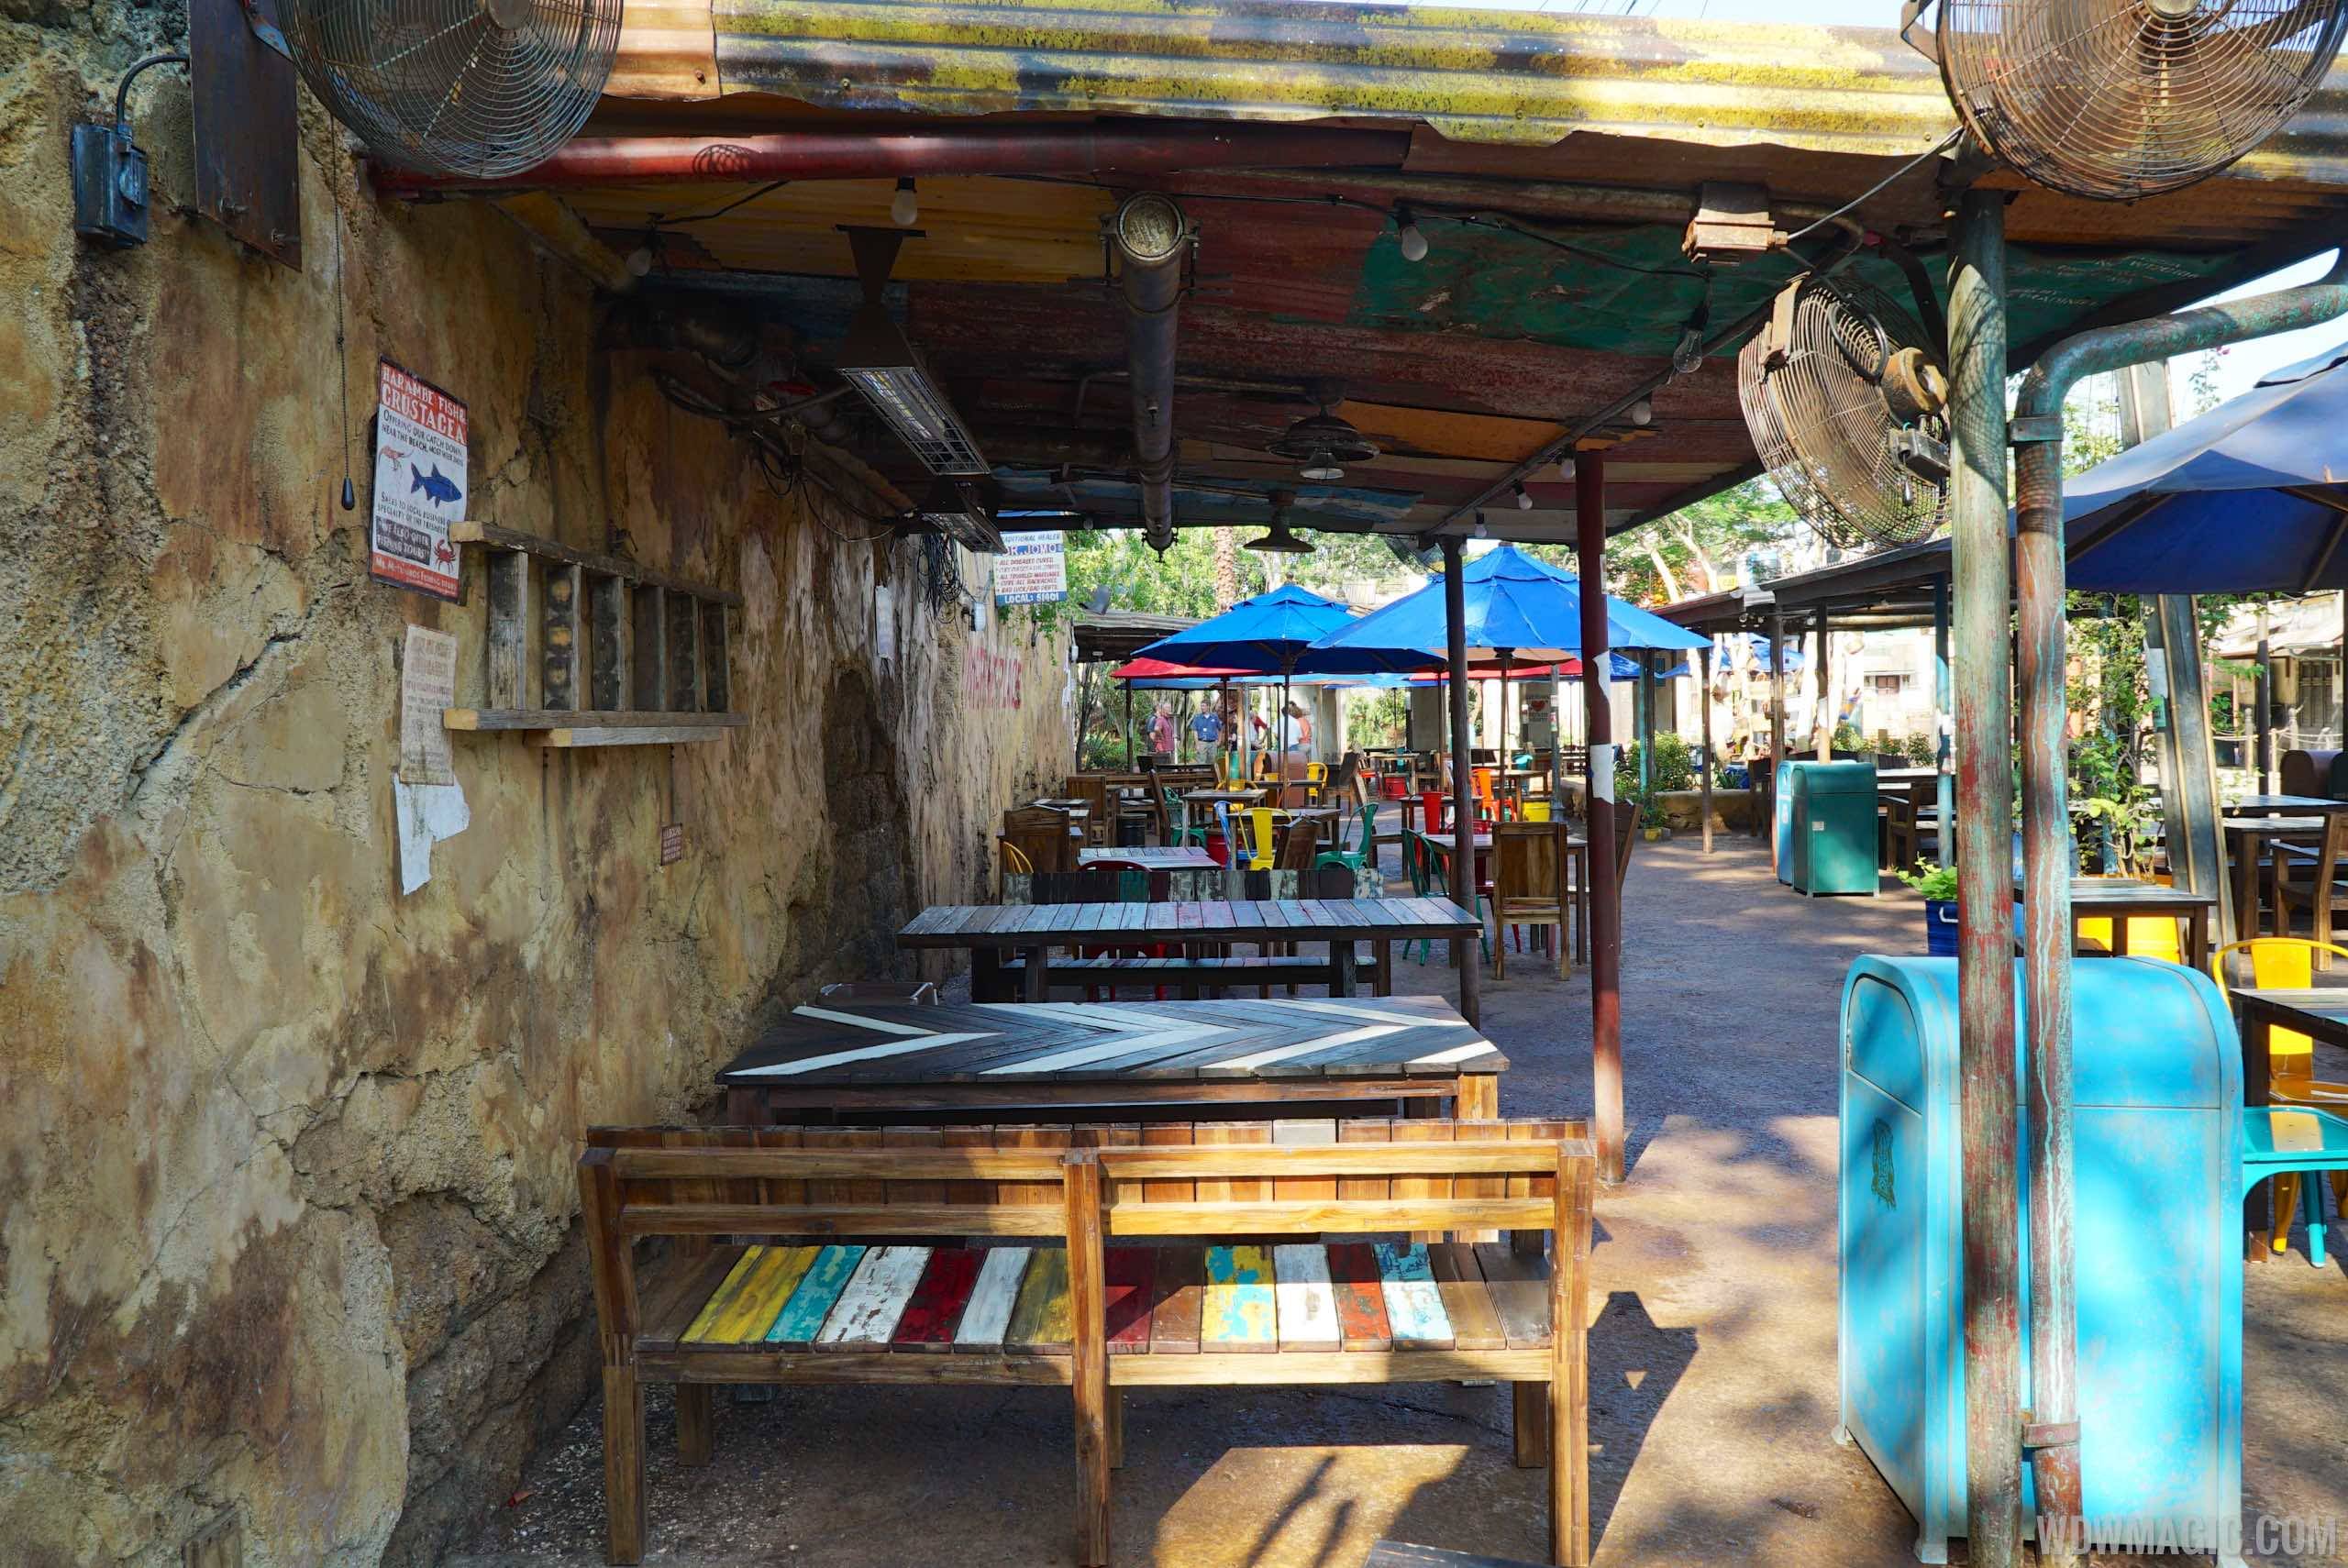 Harambe Market - Dining area